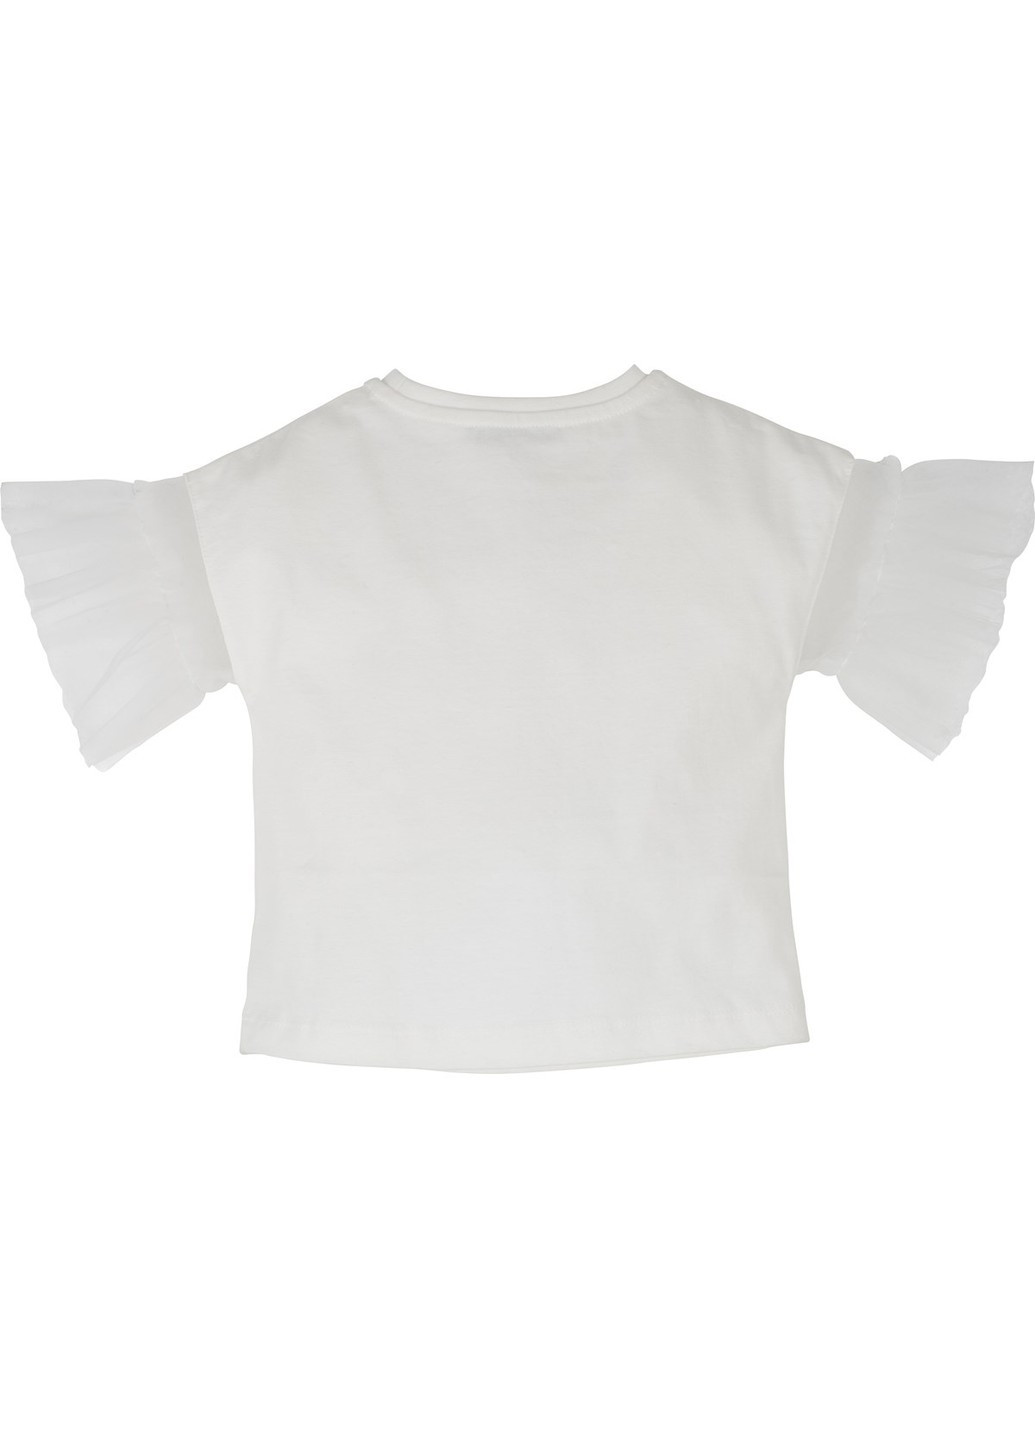 М'ятний літній комплект 2 предмета (футболка+шорти) idilbaby mamino14476 Idil Baby Mamino